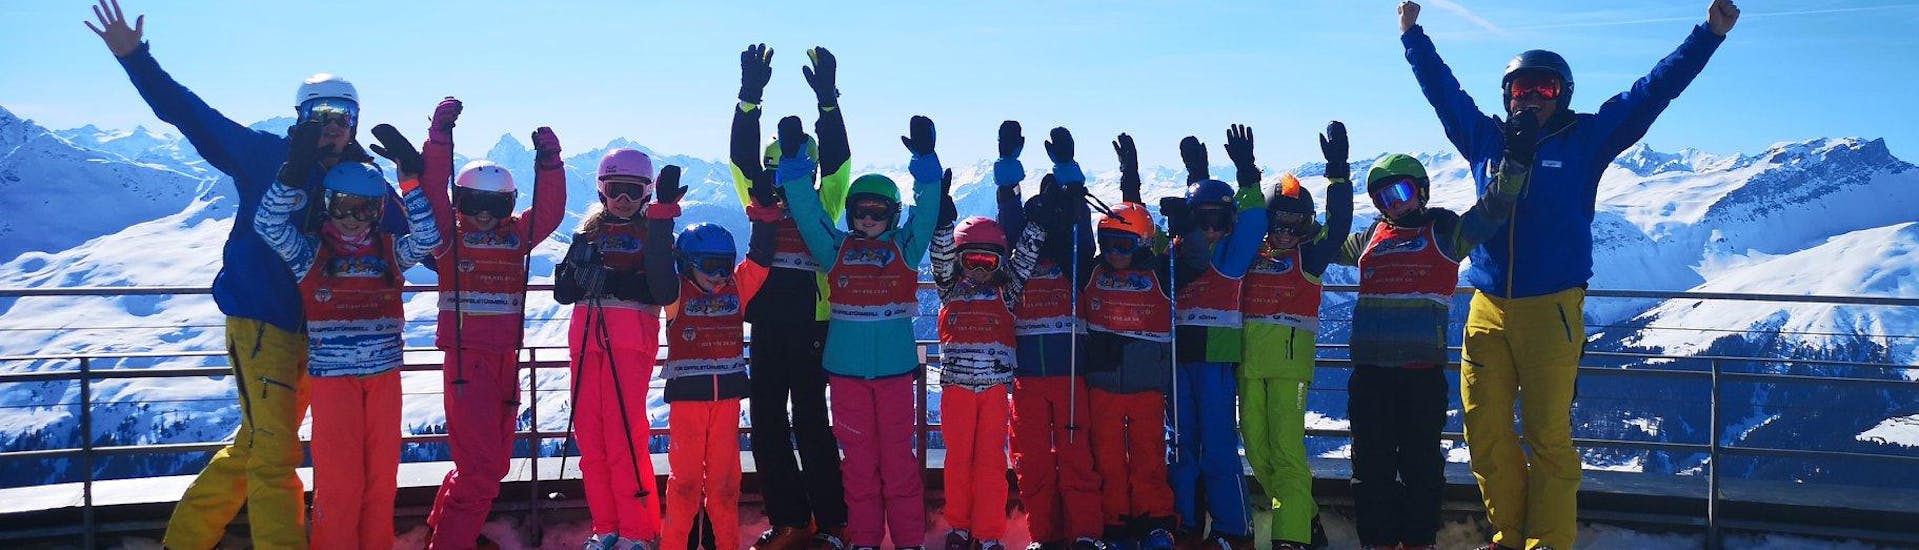 Cours de ski Enfants (8-14 ans) pour Skieurs avancés.